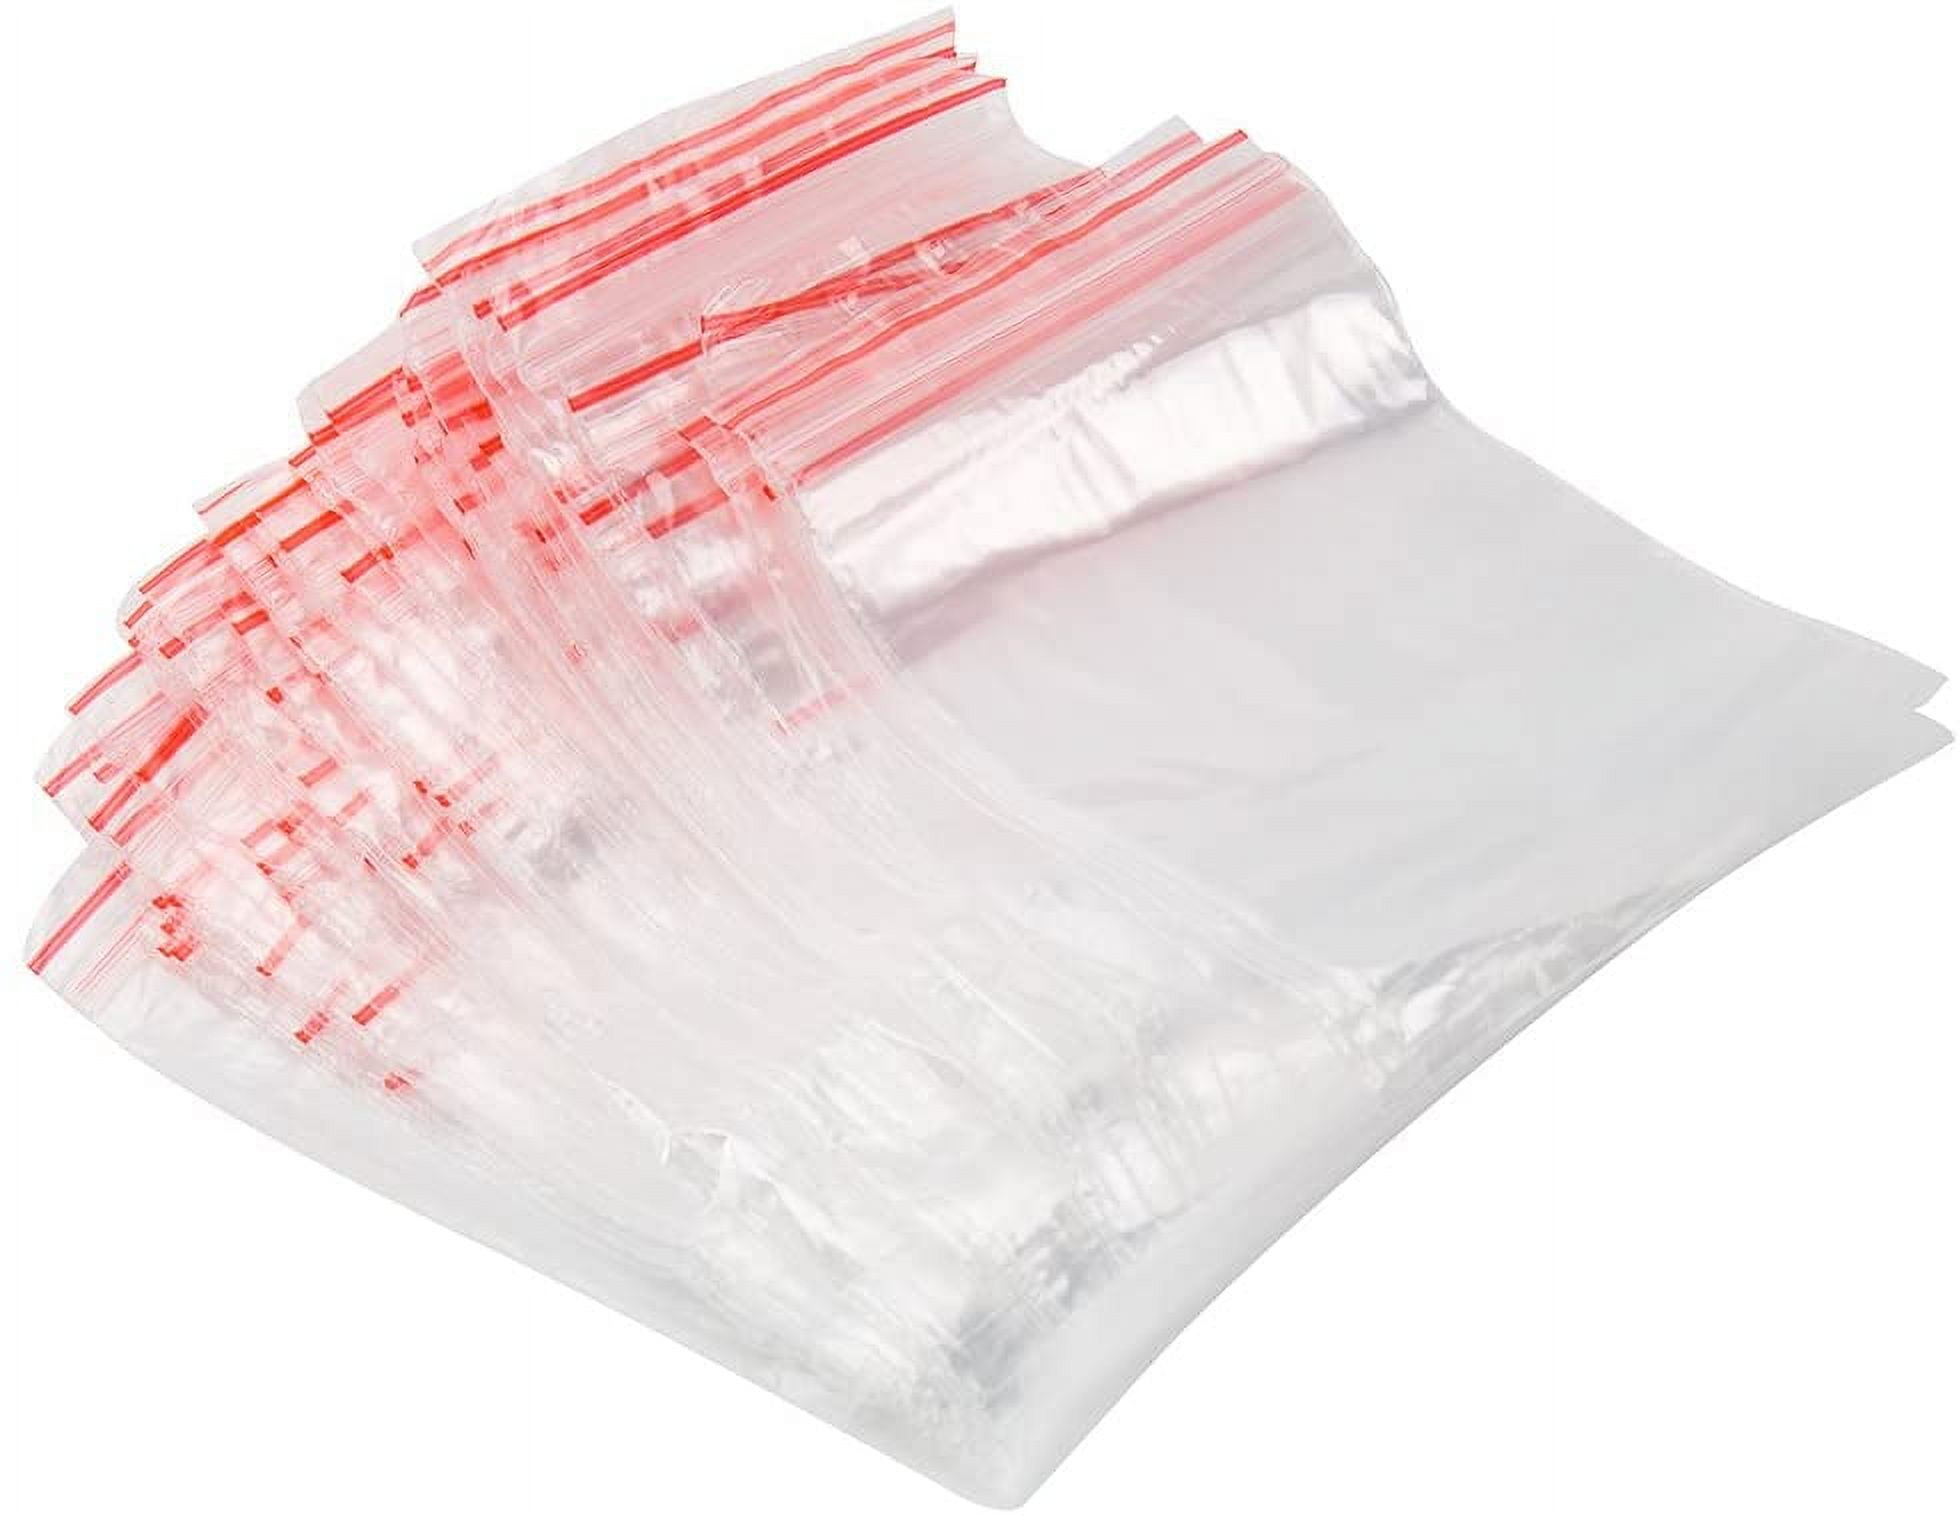 Cellophane Resealable Bags